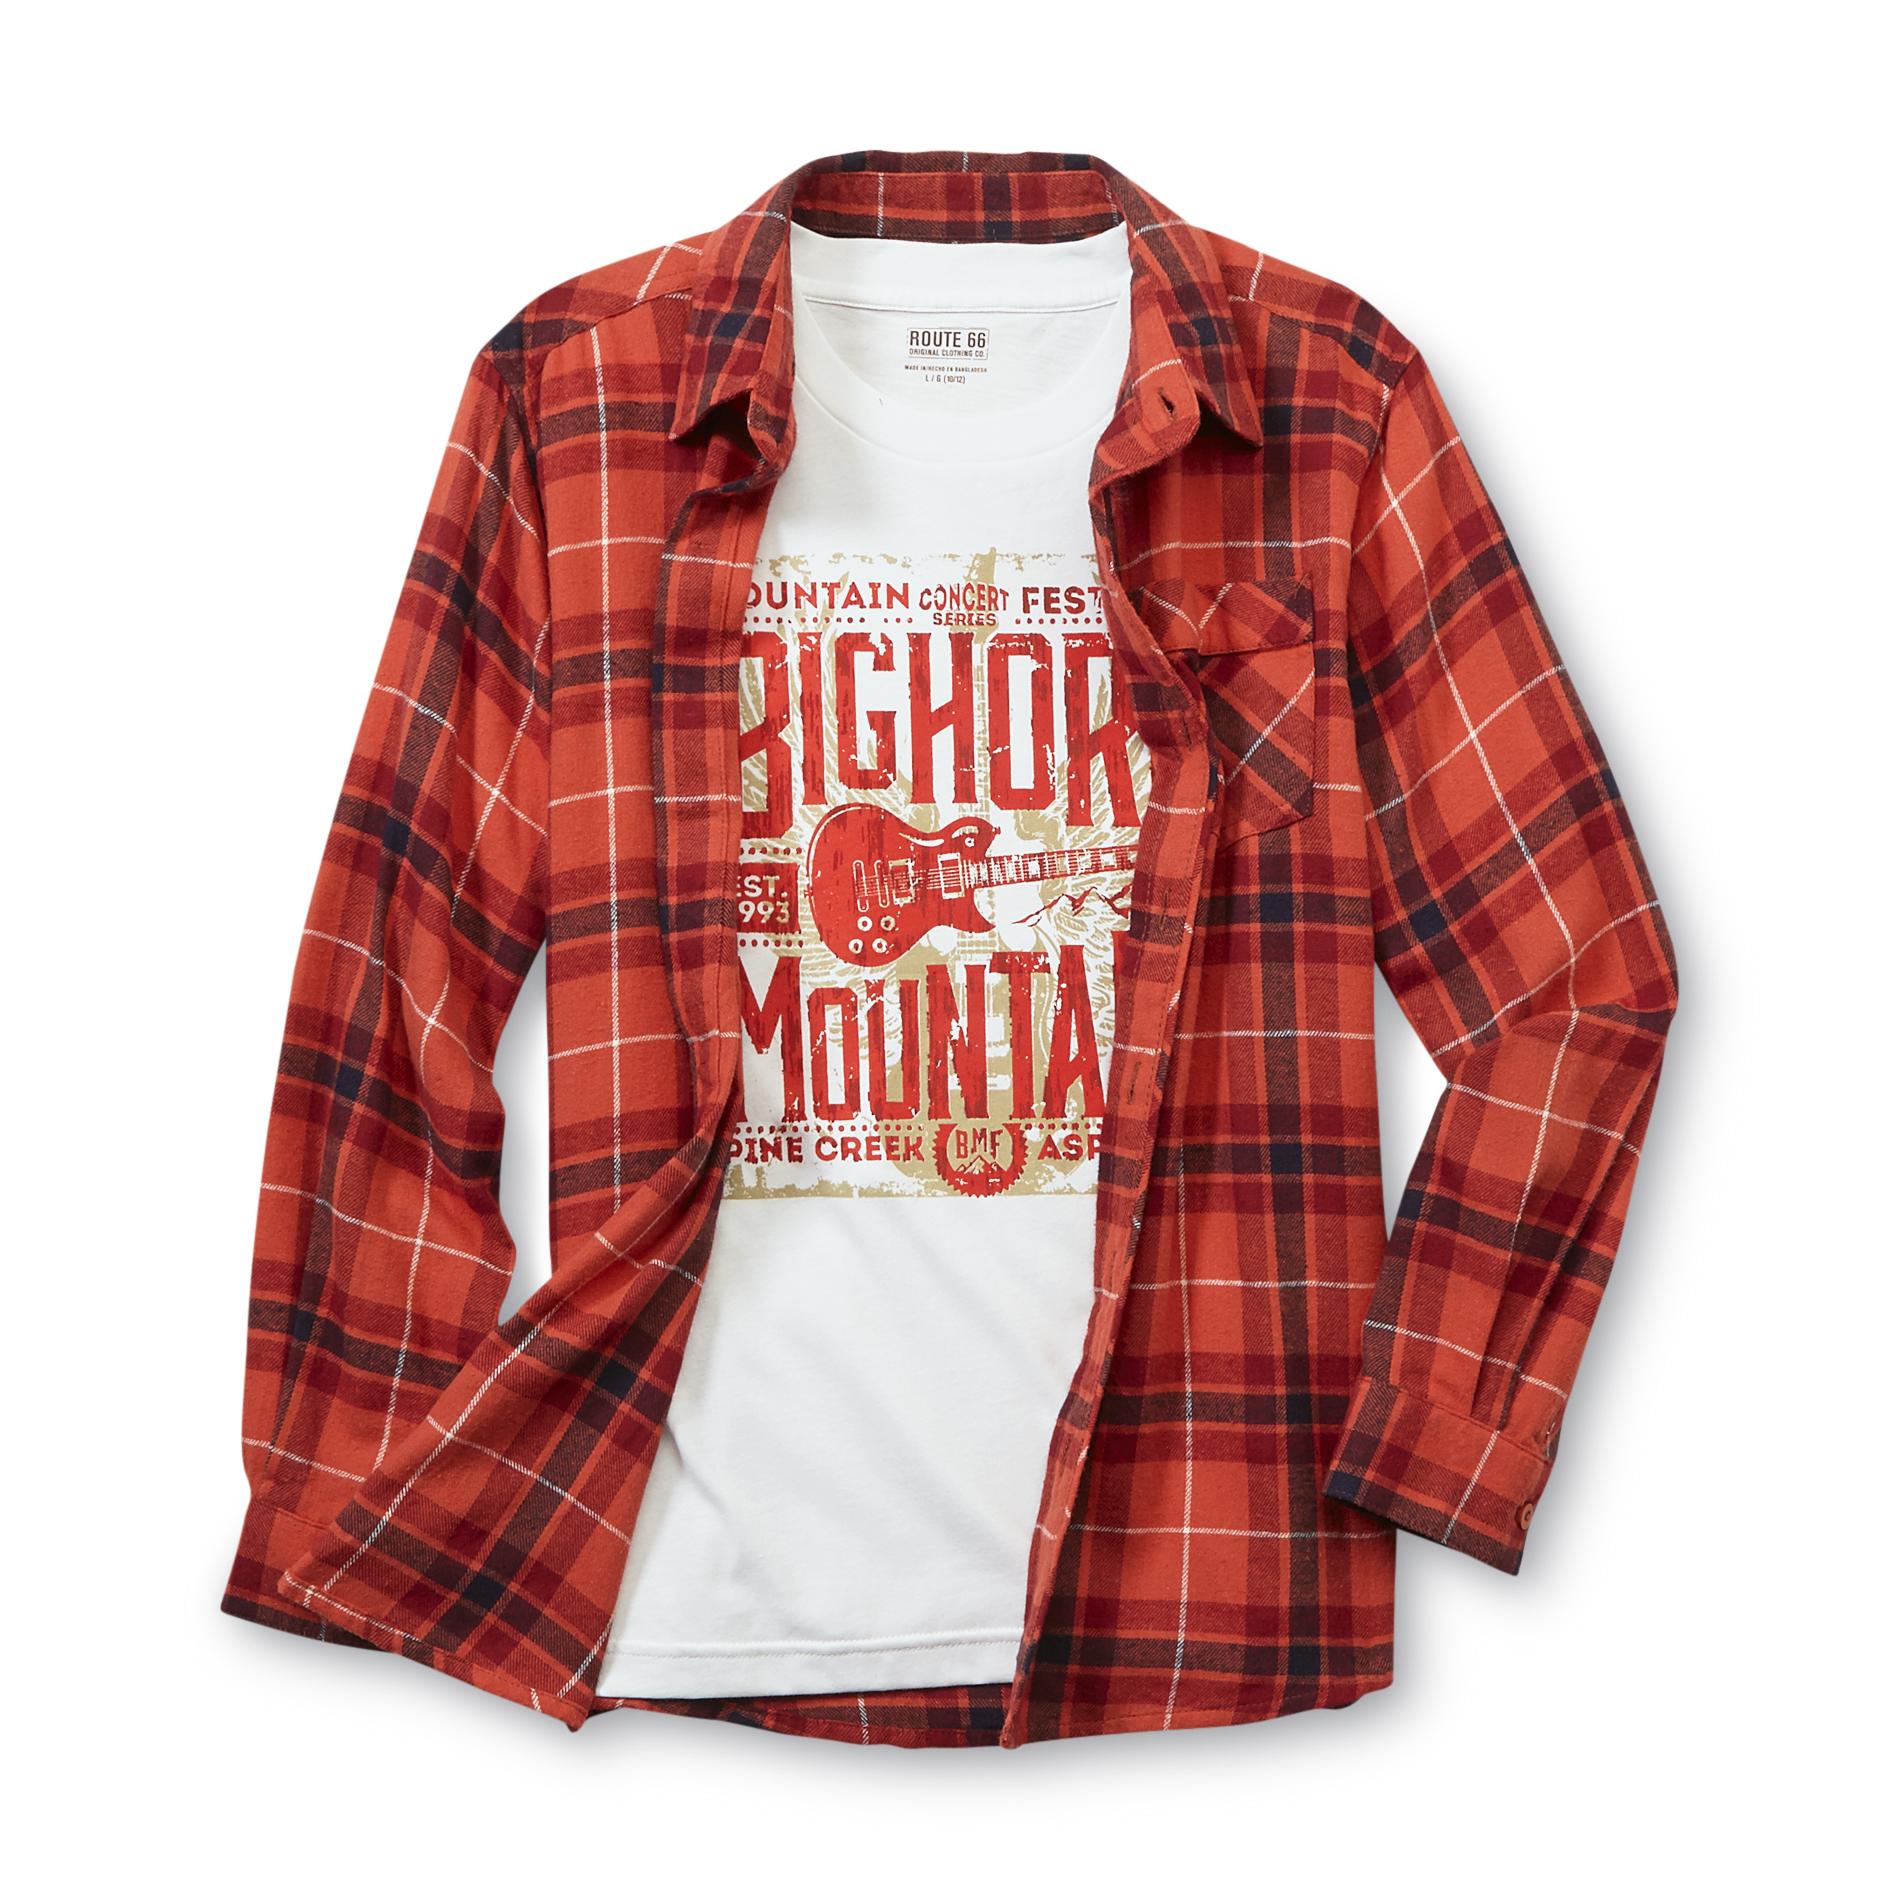 Route 66 Boy's Plaid Flannel Shirt & T-Shirt - Bighorn Mountain